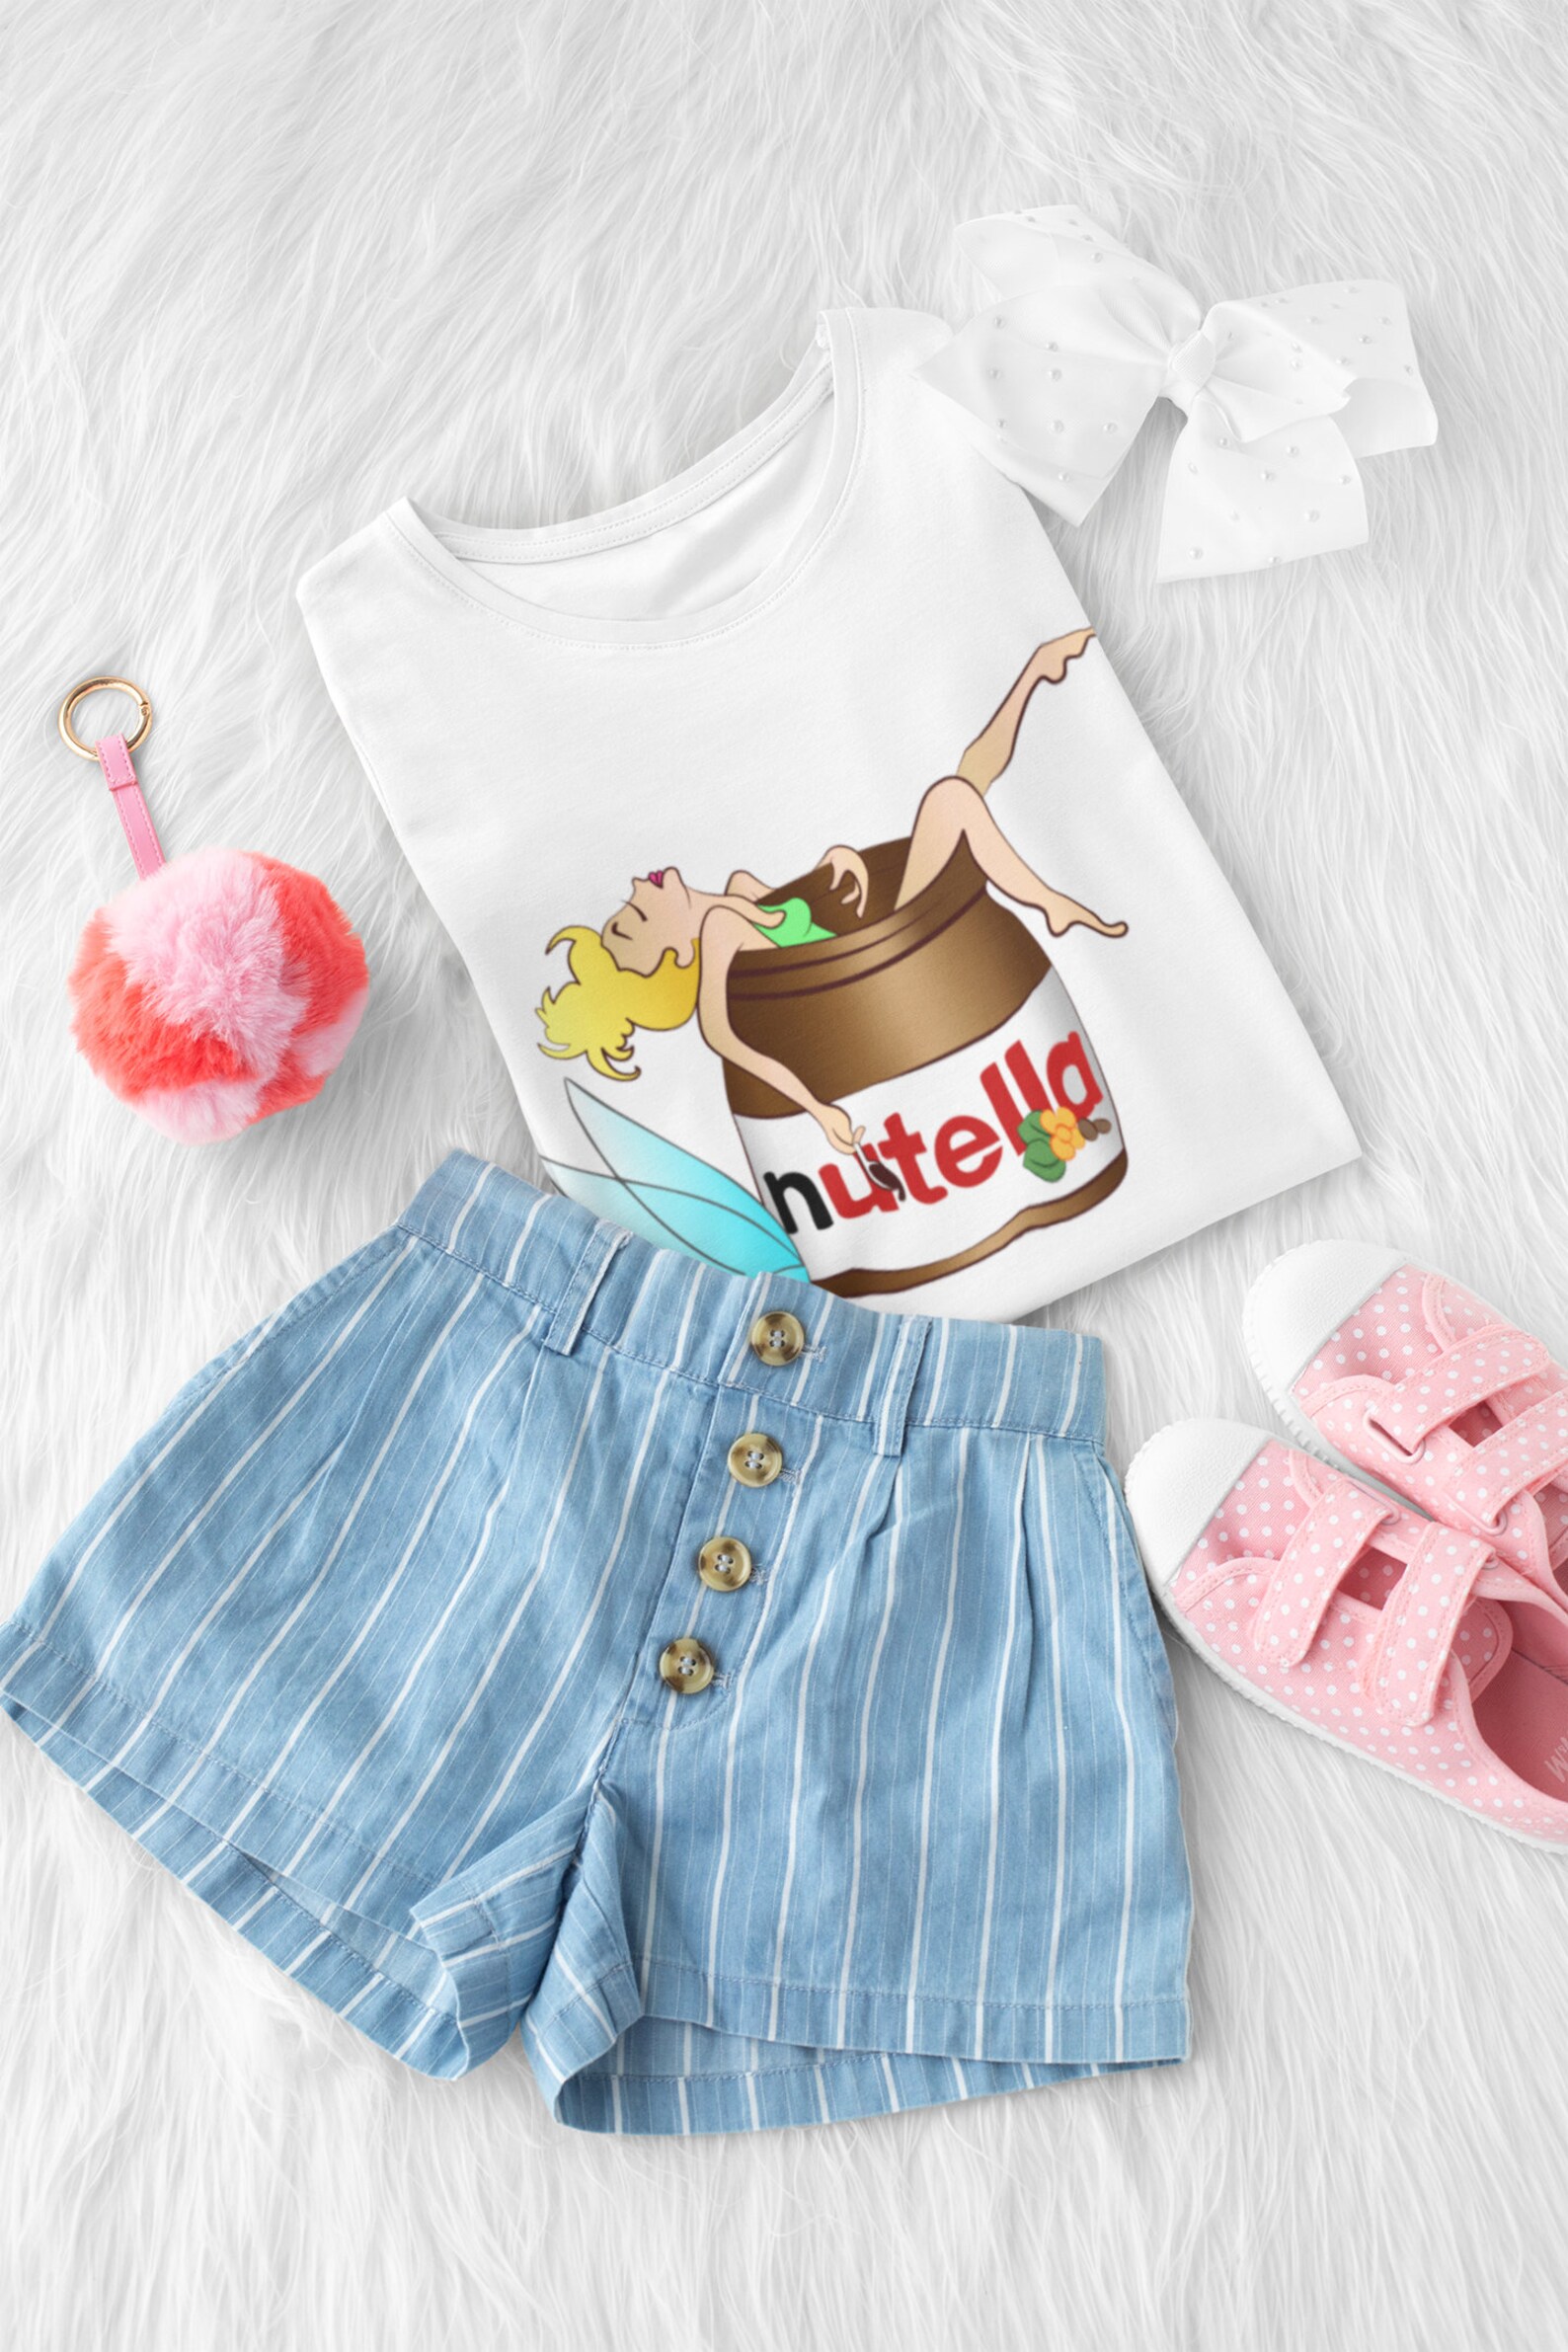 Nutella Chocolate Kids Tshirts/Funny tshirts for kids/Kids | Etsy